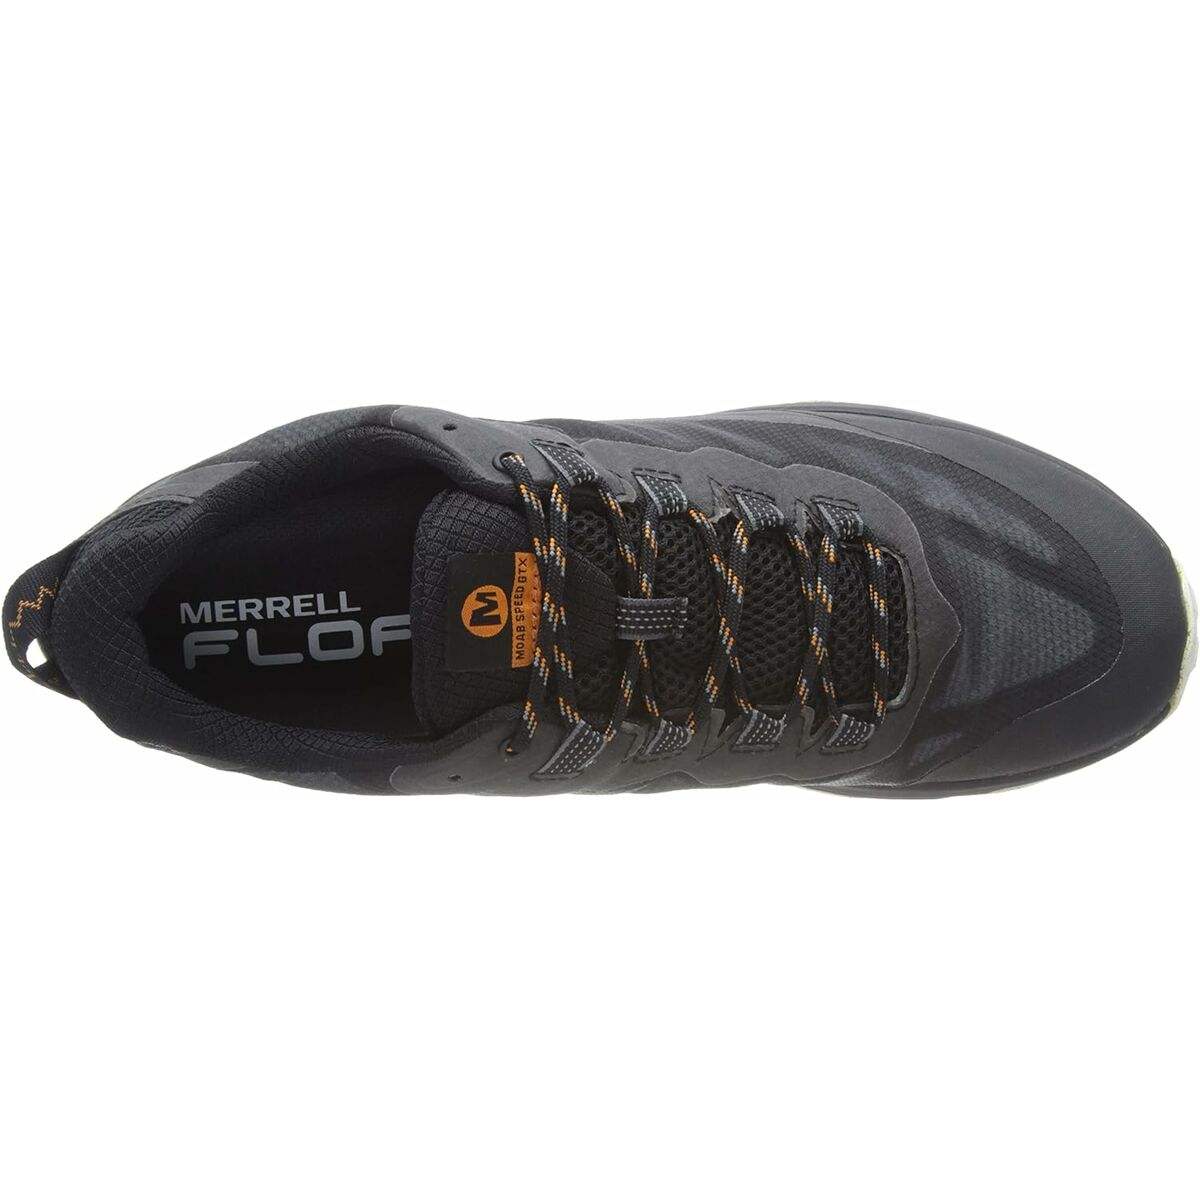 Chaussures de Sport pour Homme Merrell GTX - Merrell - Jardin D'Eyden - jardindeyden.fr